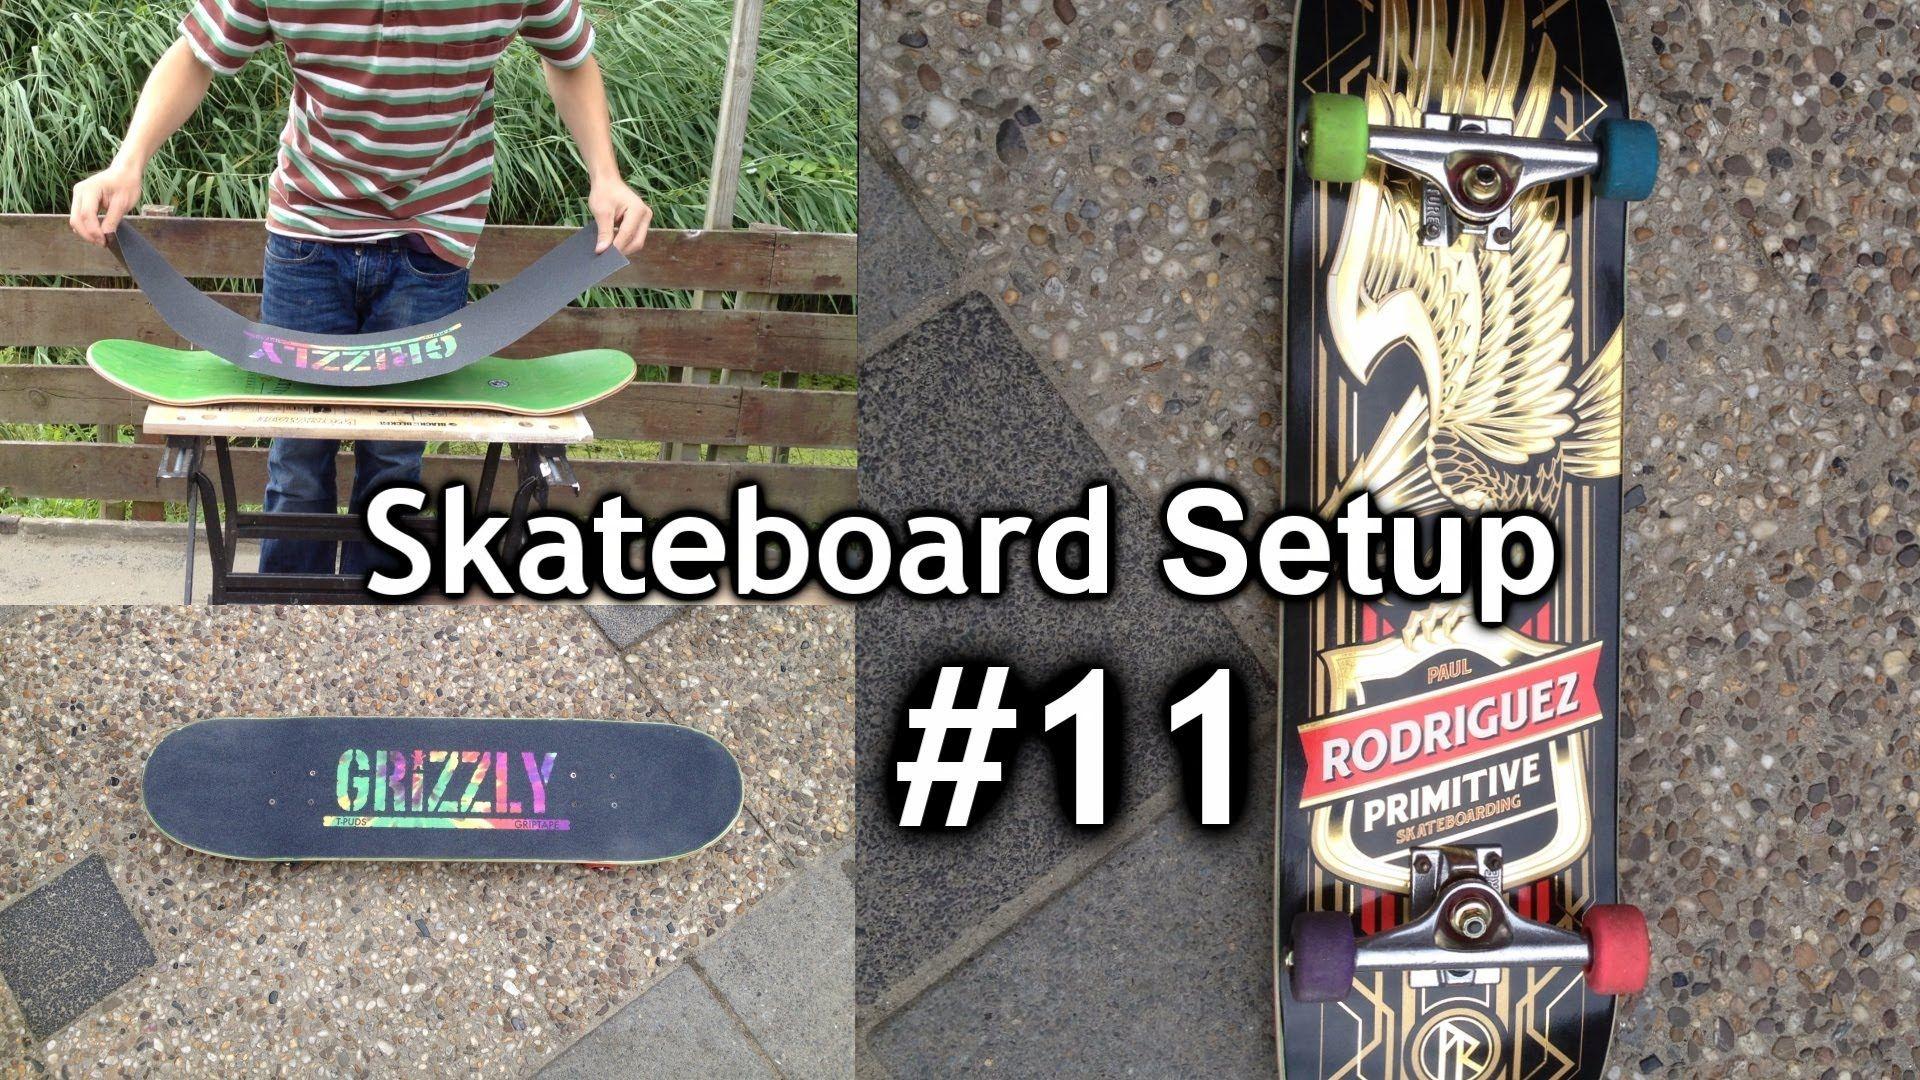 Skateboard SETUP *Primitive deck*